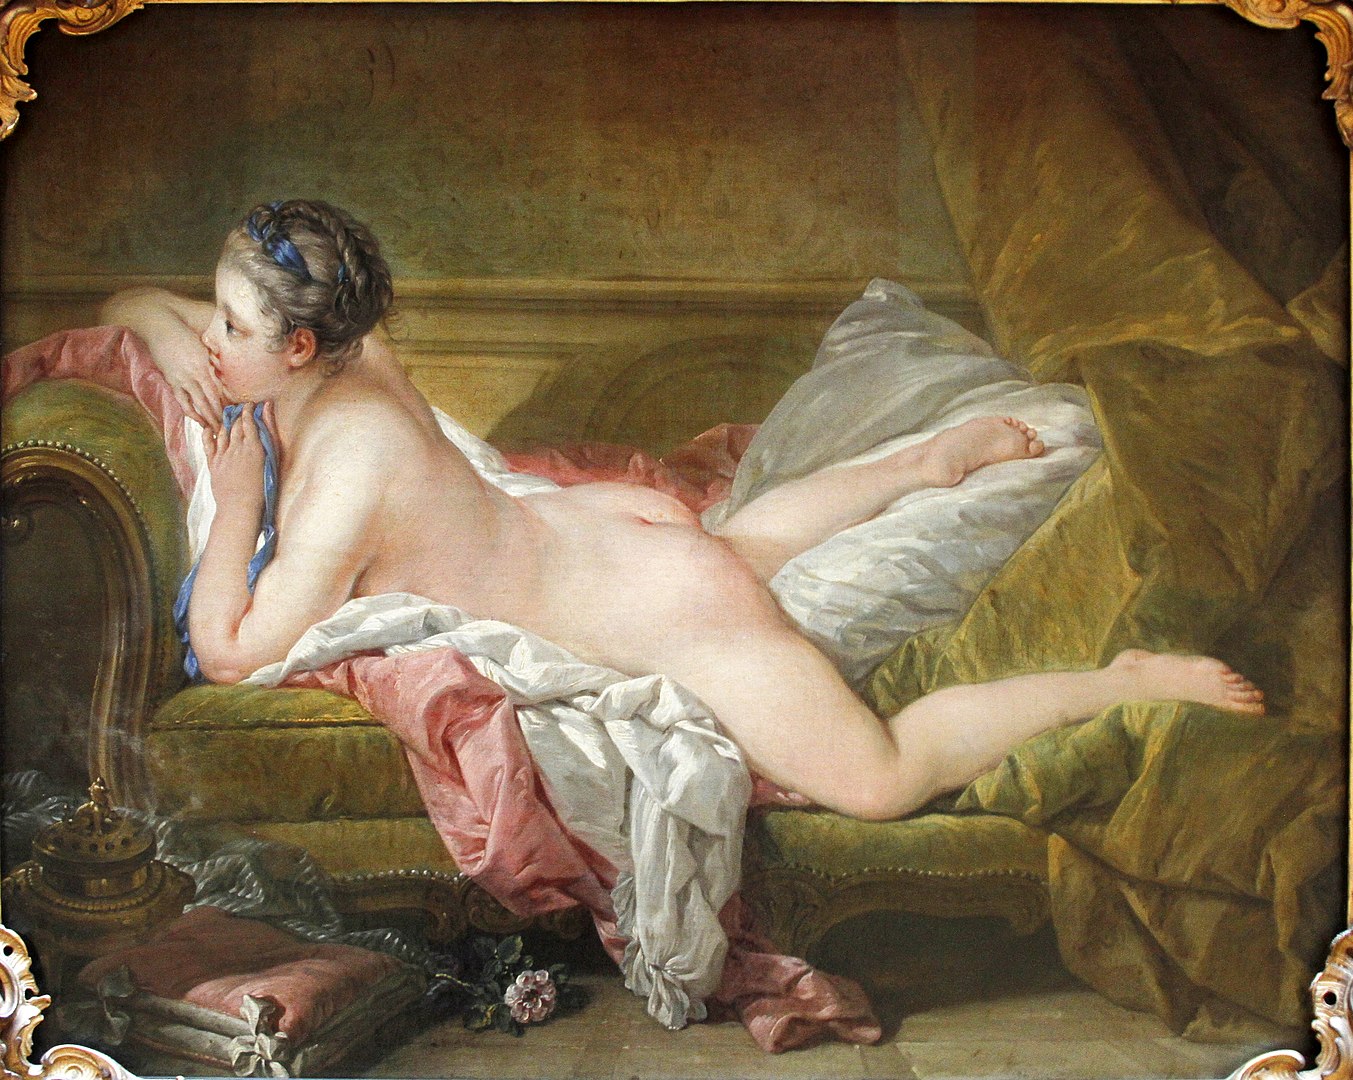 Рисованная порнография 18 19 века (76 фото) - порно и фото голых на автонагаз55.рф